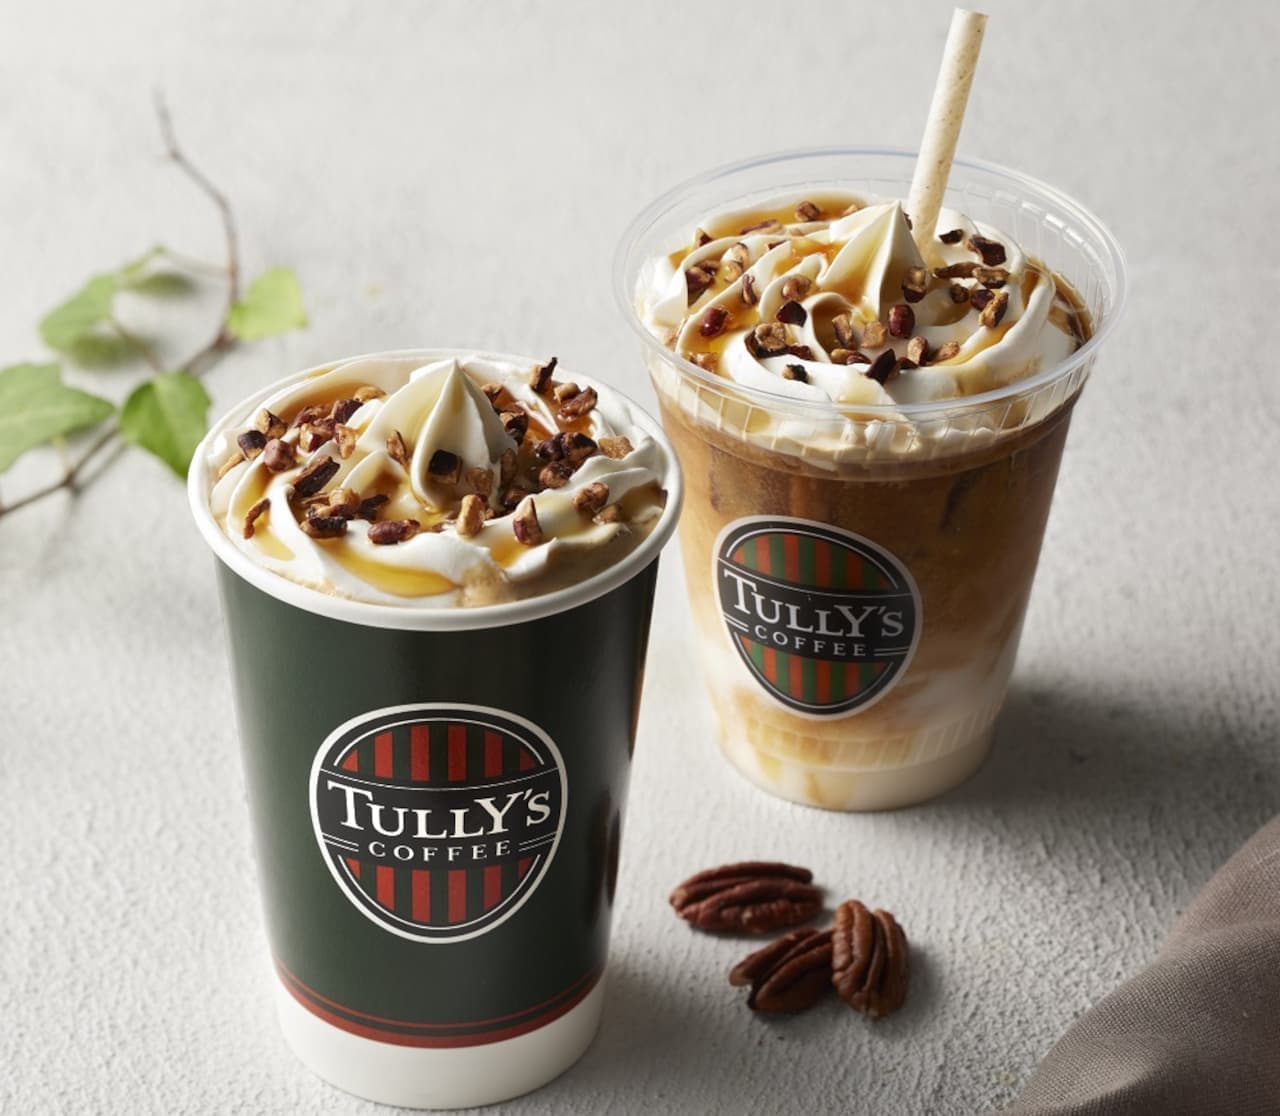 Tully's Coffee "Maple & Pecan Nut Oats Latte"